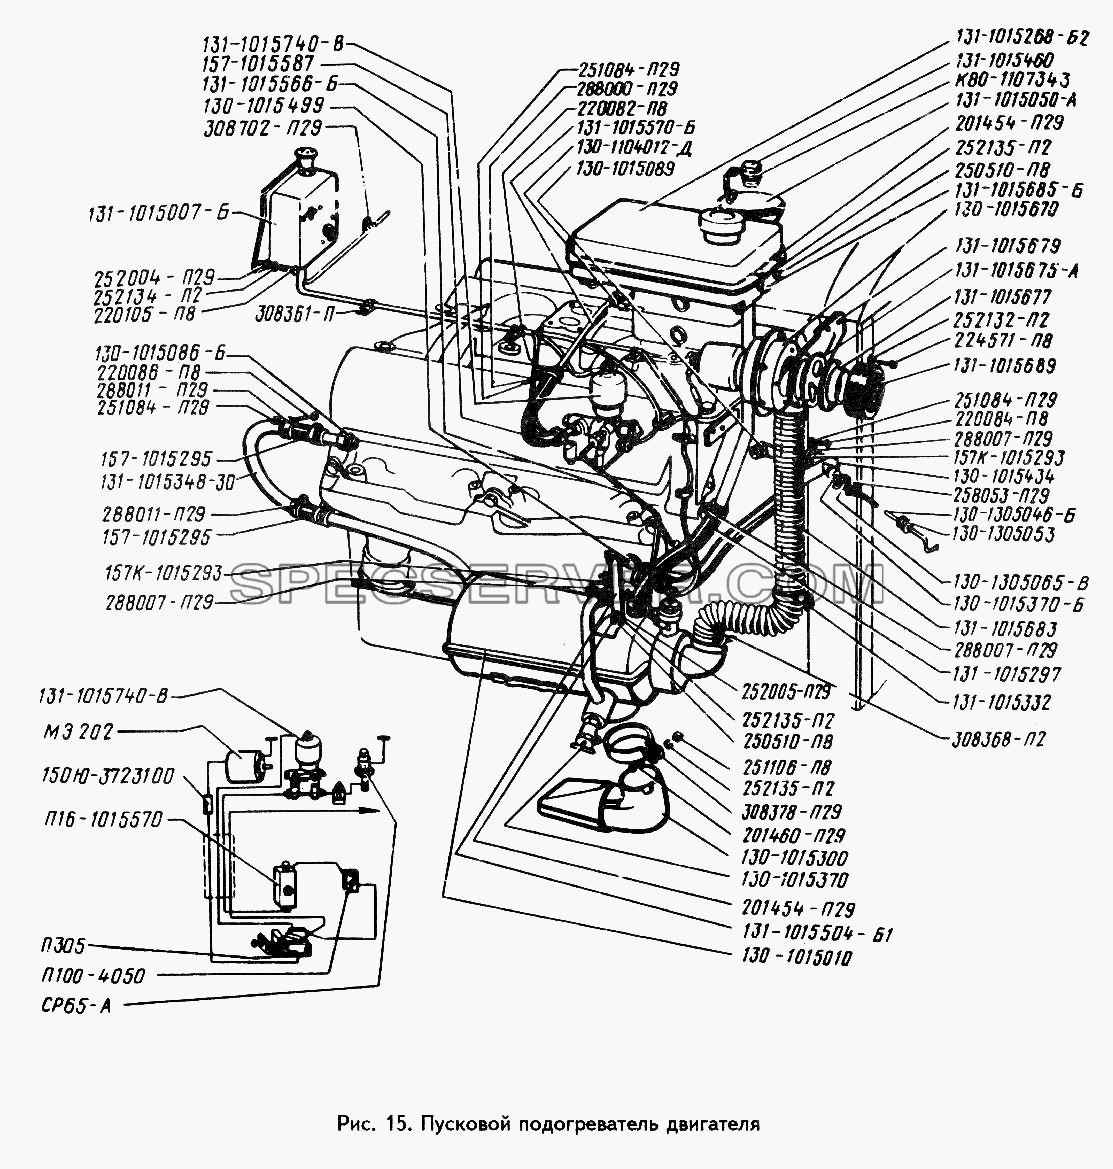 Пусковой подогреватель двигателя (Устанавливается по требованию заказчика) для ЗИЛ 433360 (список запасных частей)